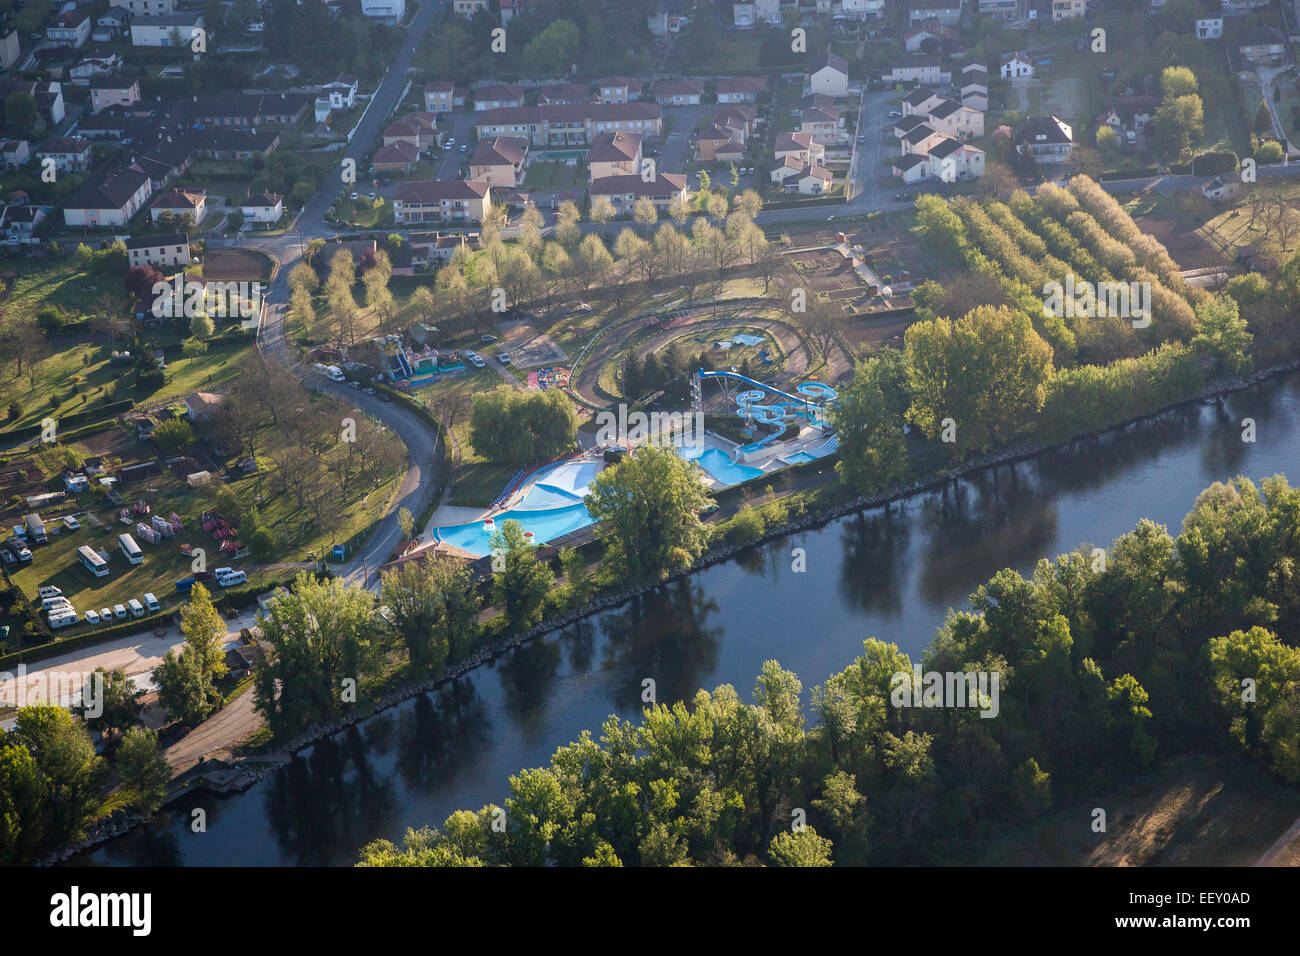 Vista aérea de la piscina situado junto a un río Foto de stock